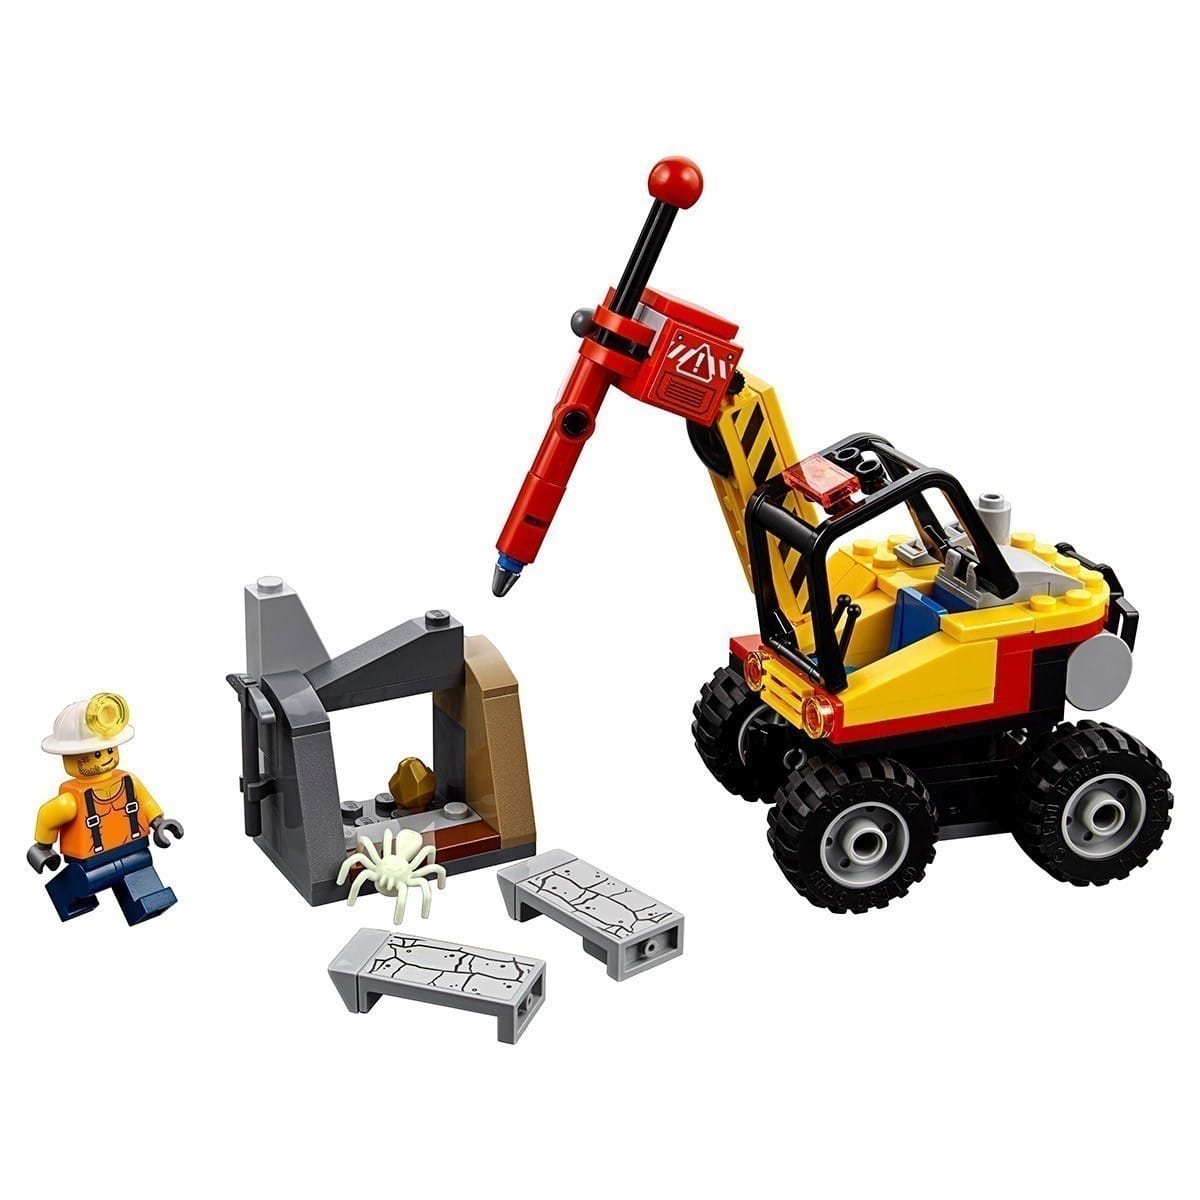 LEGO® City - 60185 Mining Power Splitter